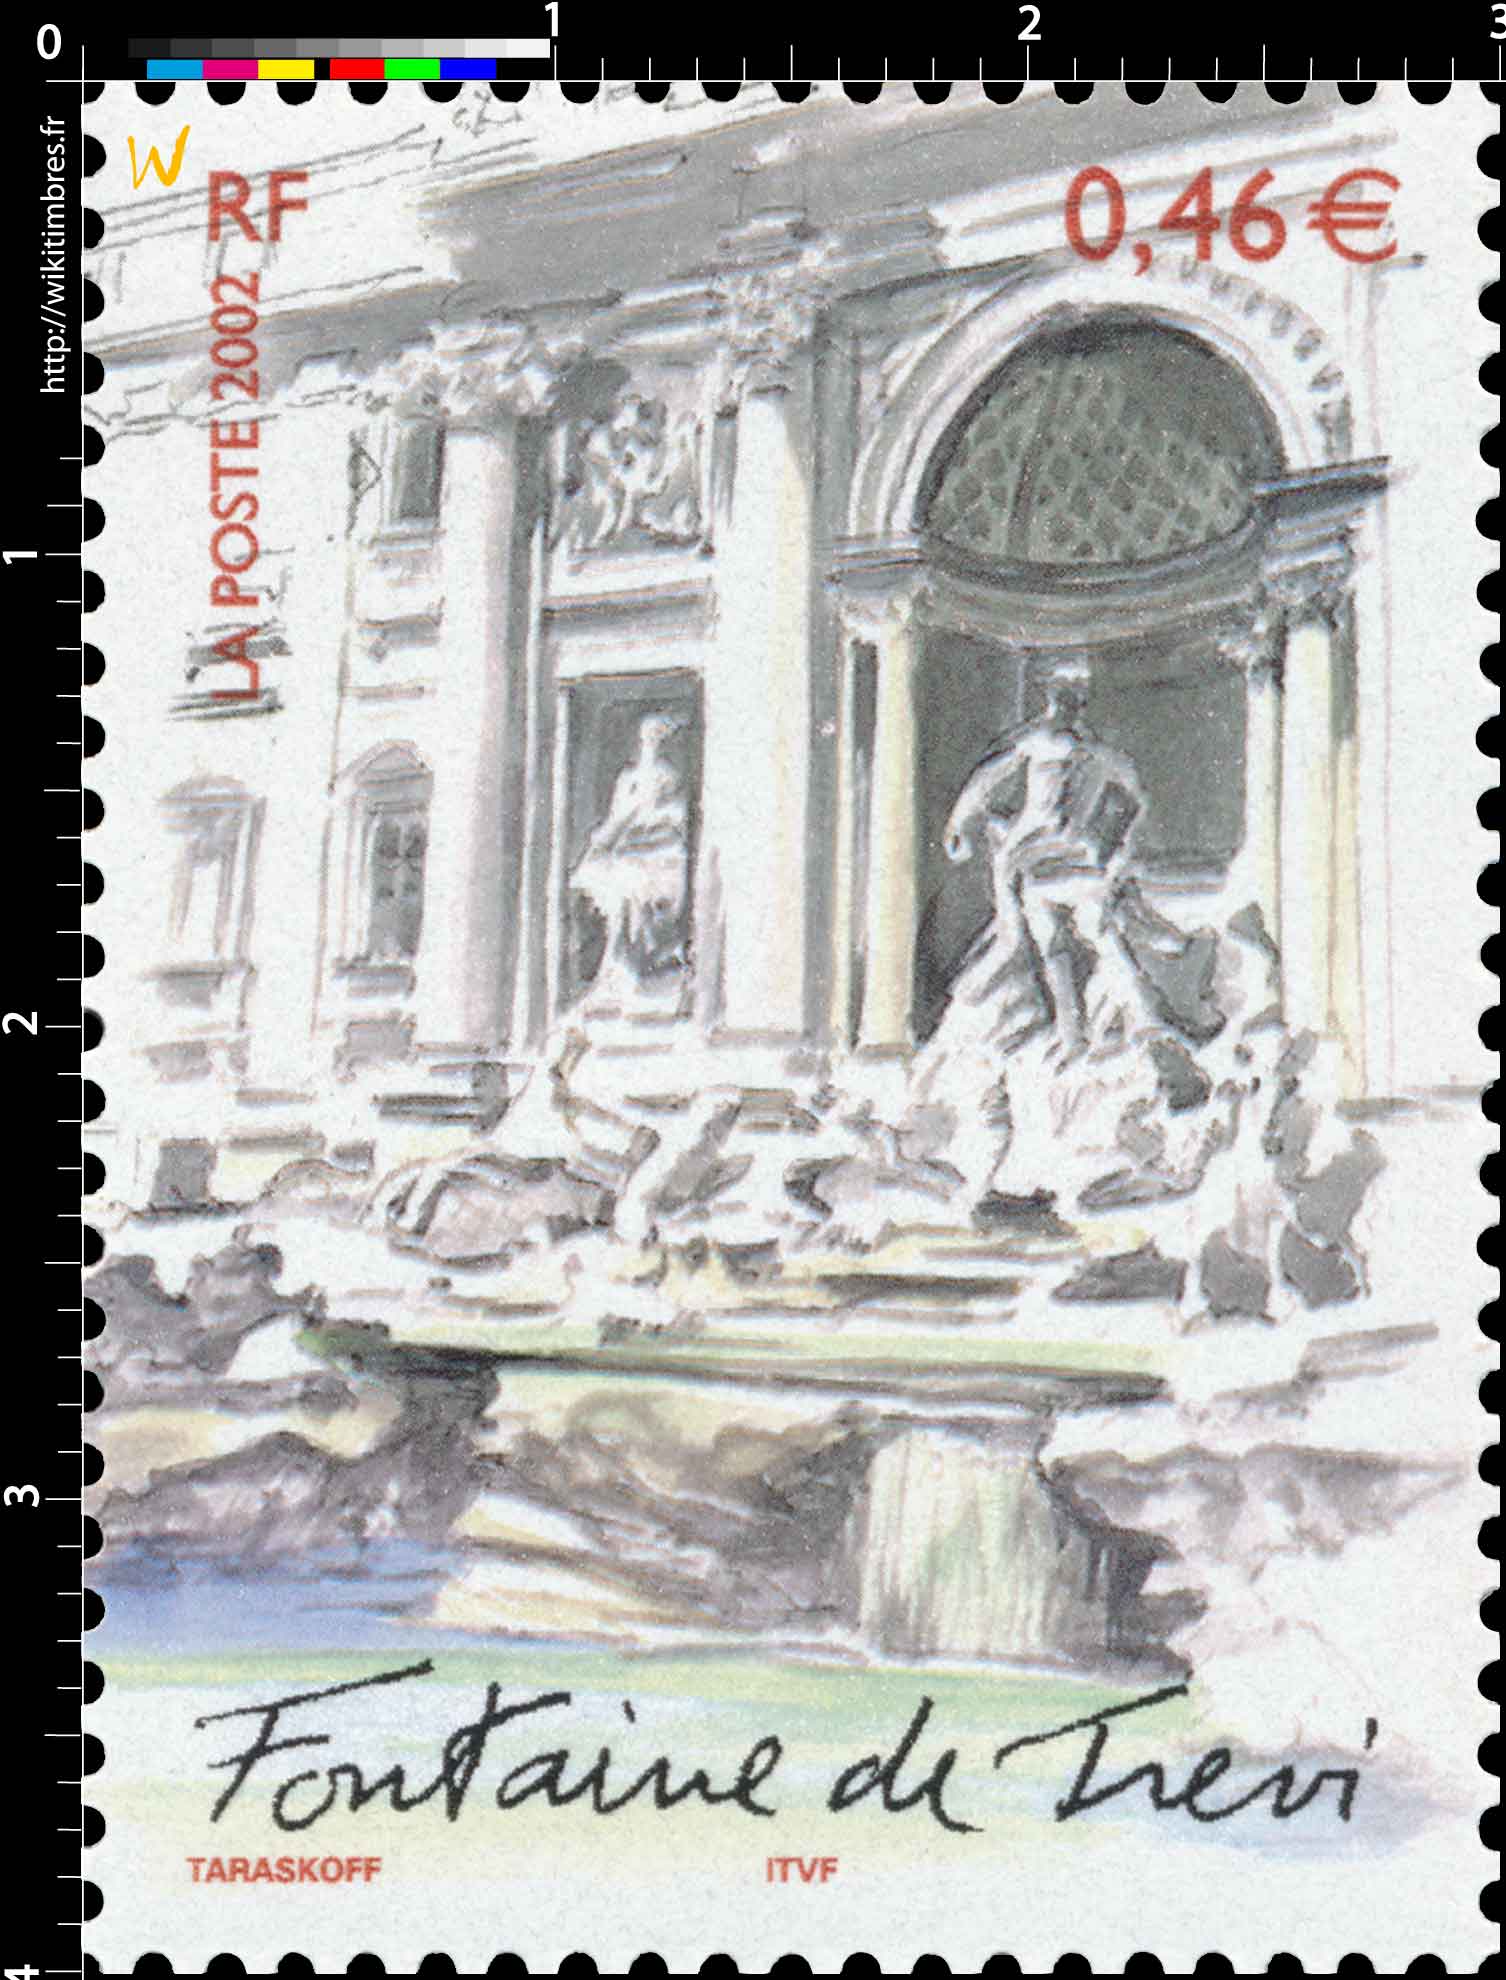 2002 Fontaine de Trevi